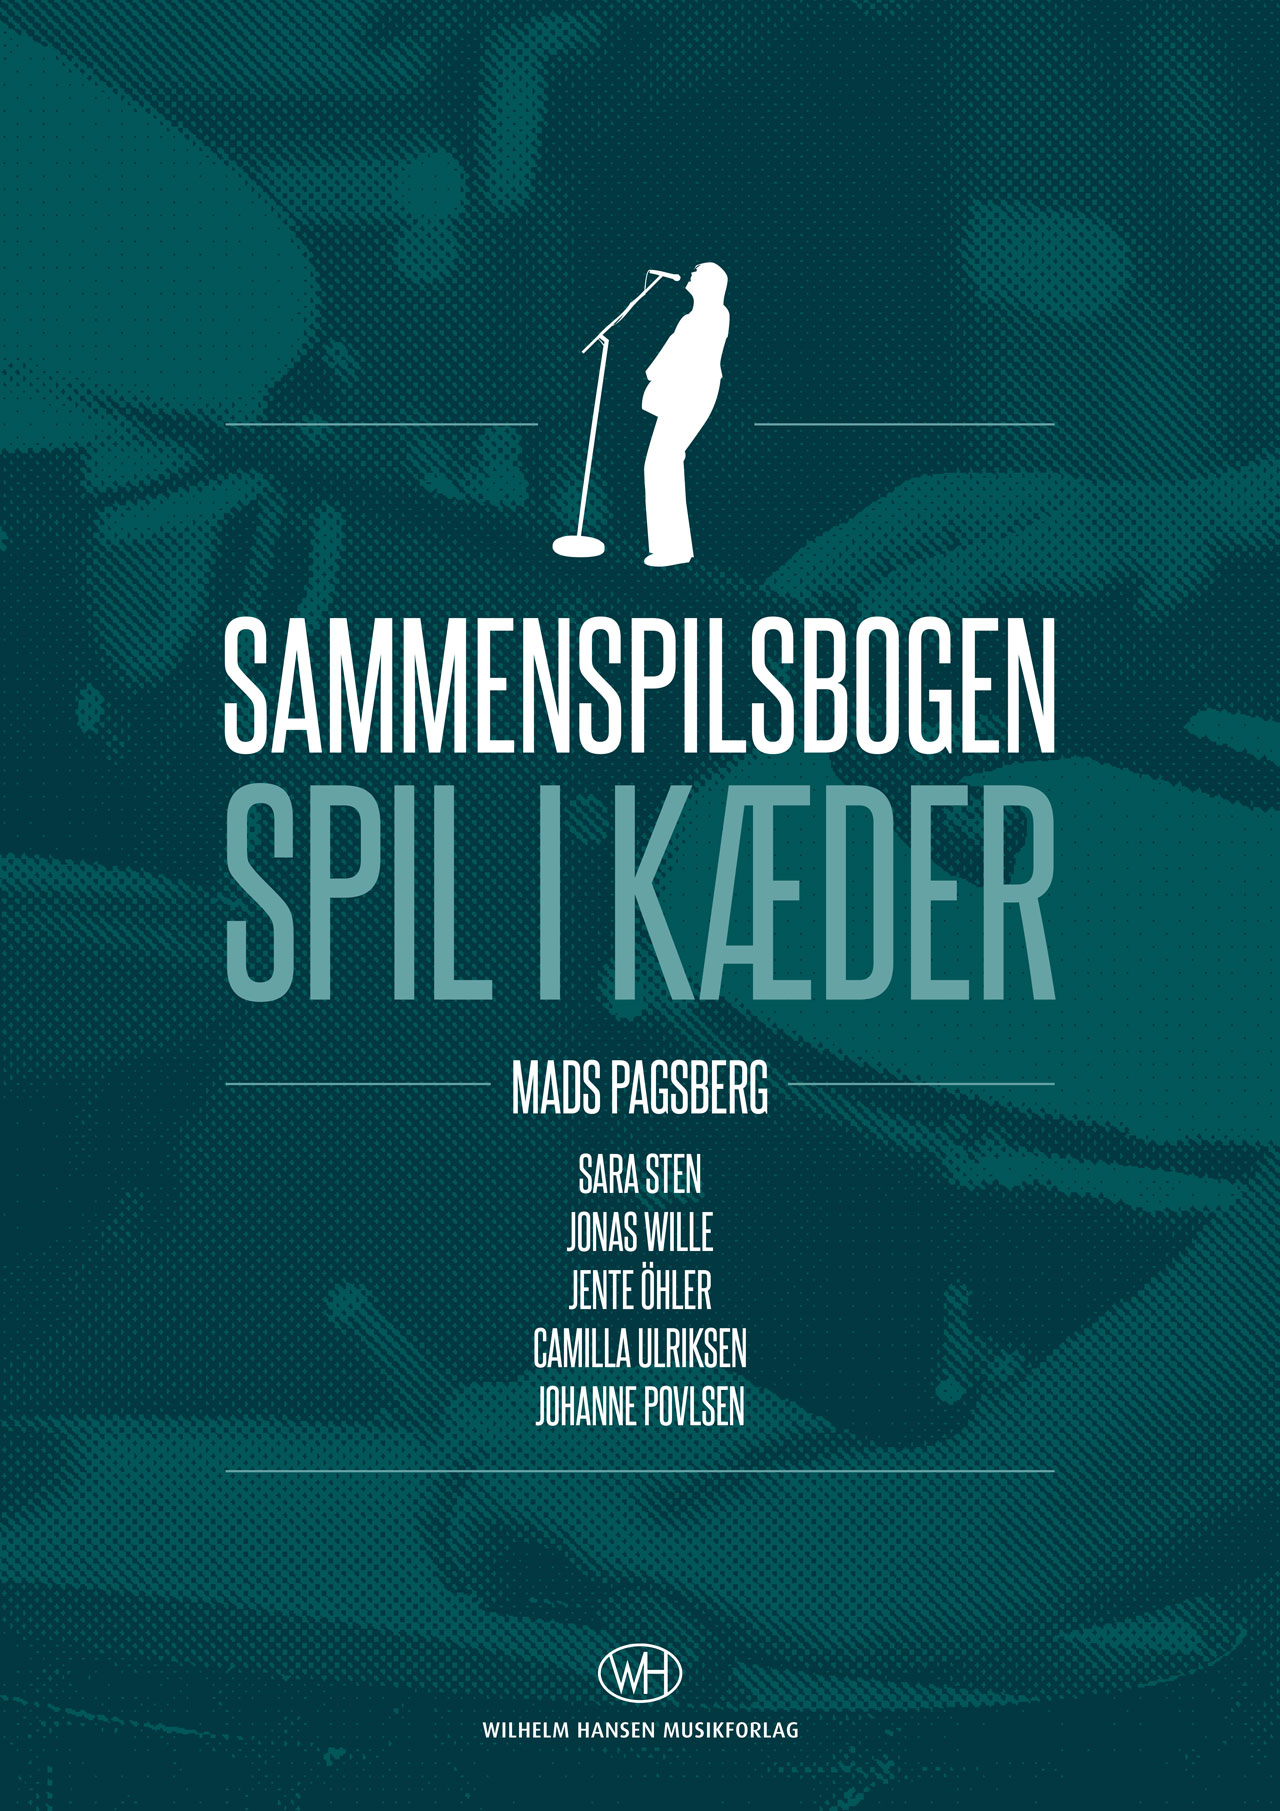 Mads Pagsberg: Sammenspilbogen: Vocal Album